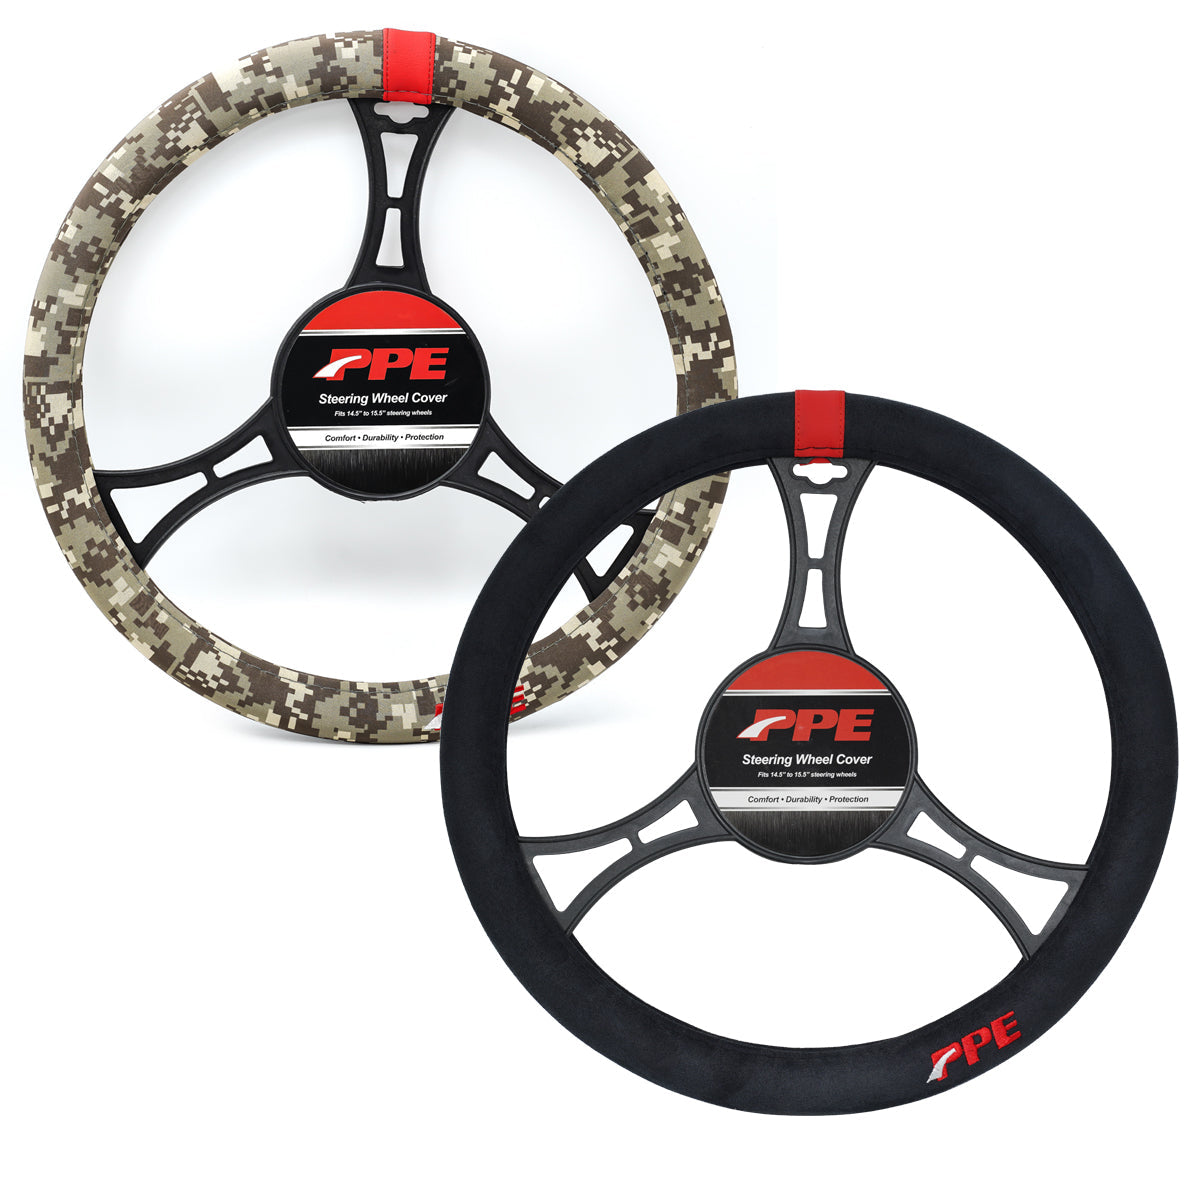 PPE Diesel Steering Wheel Cover - Digital Camo Desert Tan Fits 15.5 in steering wheels 588983040